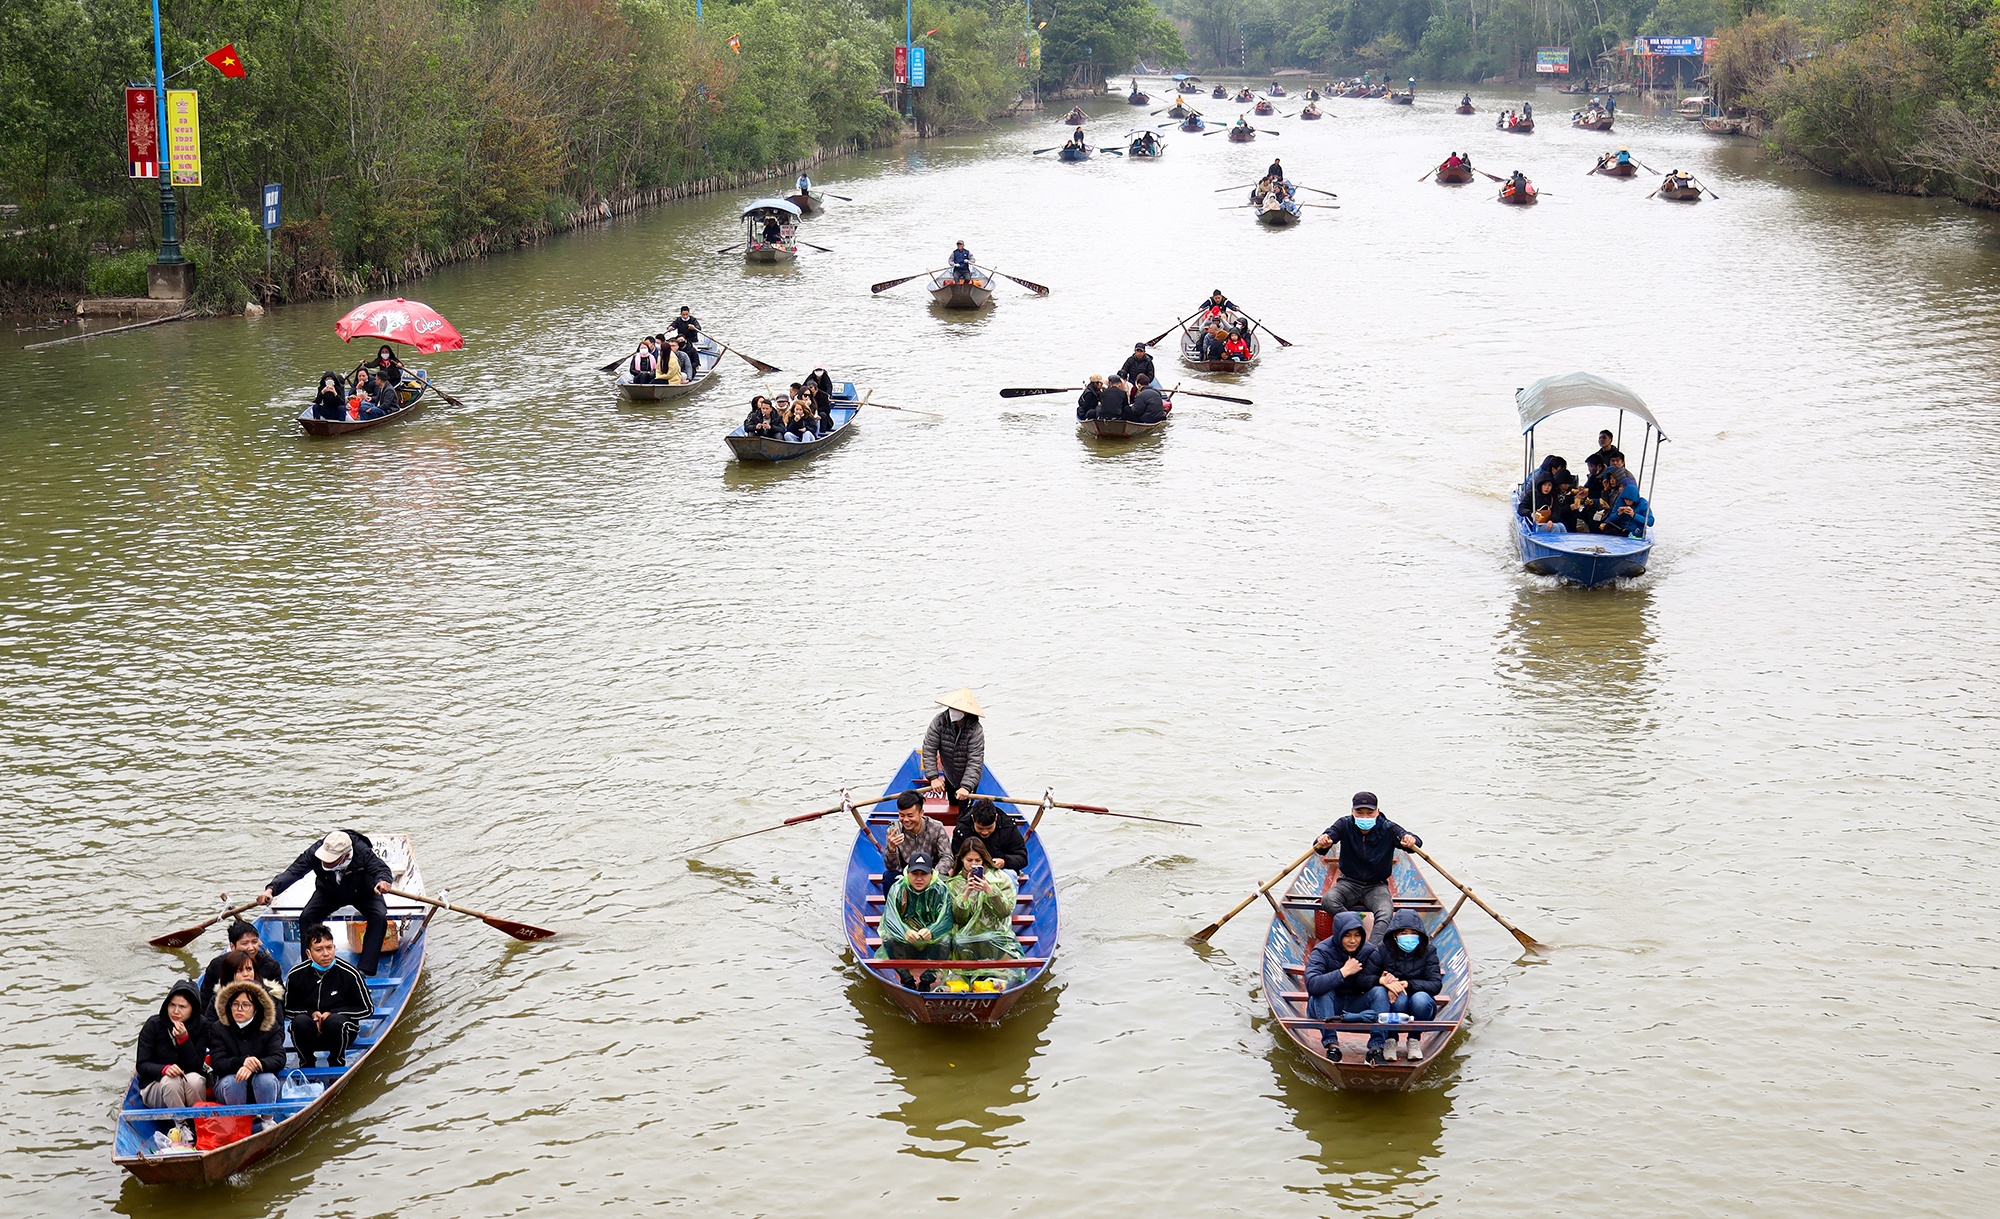 Du khách đánh bạc trên thuyền ở chùa Hương, ban quản lý 'than' khó - ảnh 1